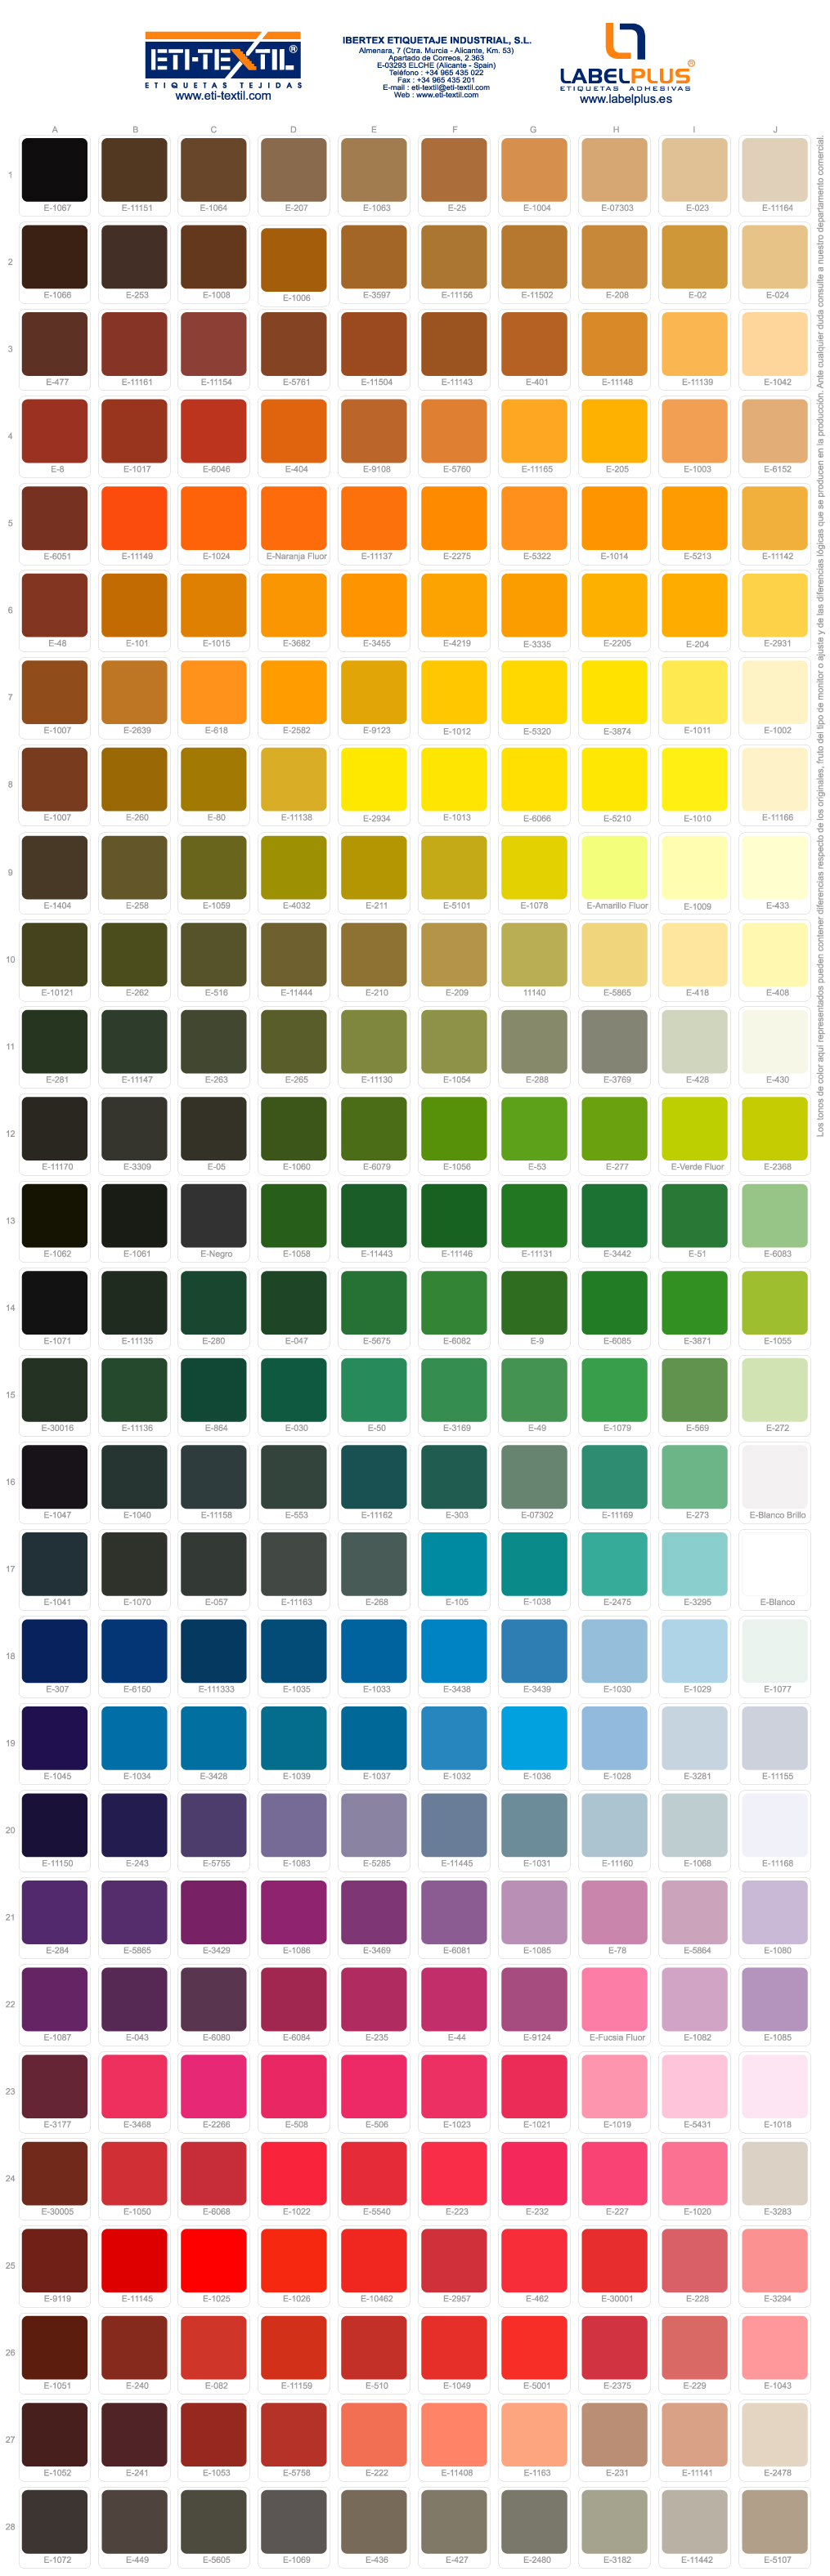 Catálogo de colores – ETI-TEXTIL